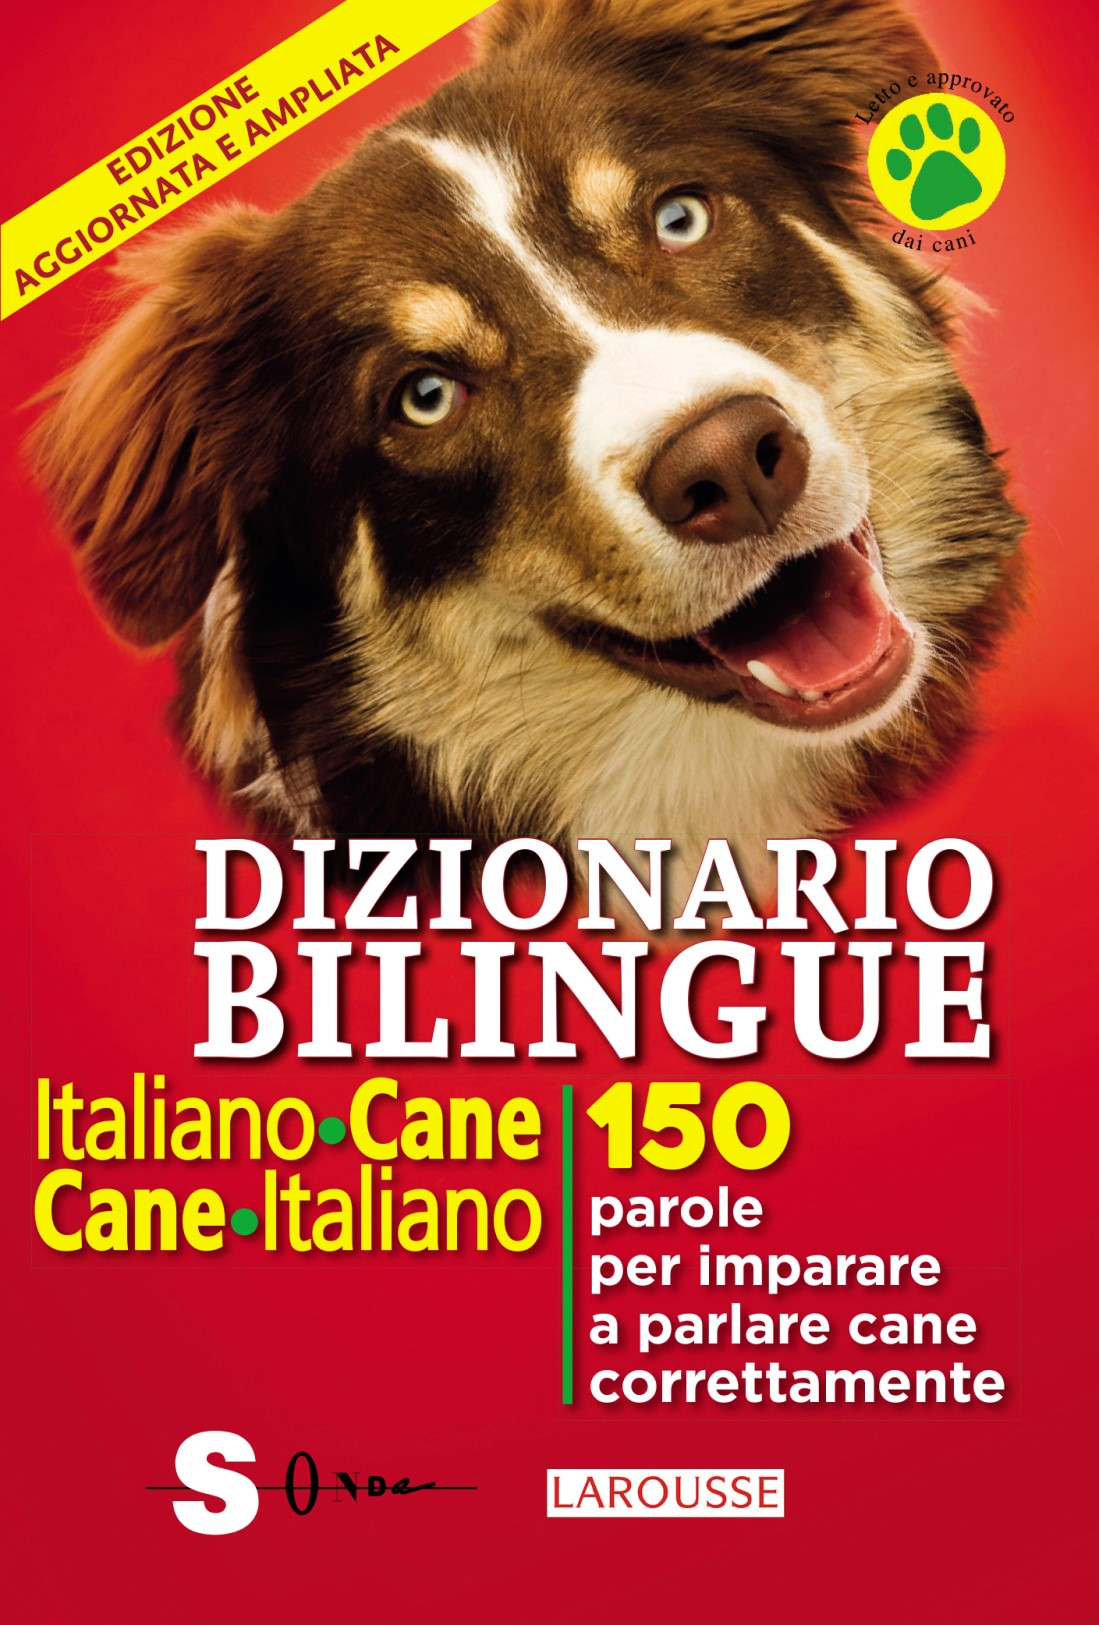 Image of Dizionario bilingue italiano-cane, cane-italiano. 150 parole per imparare a parlare cane correntemente